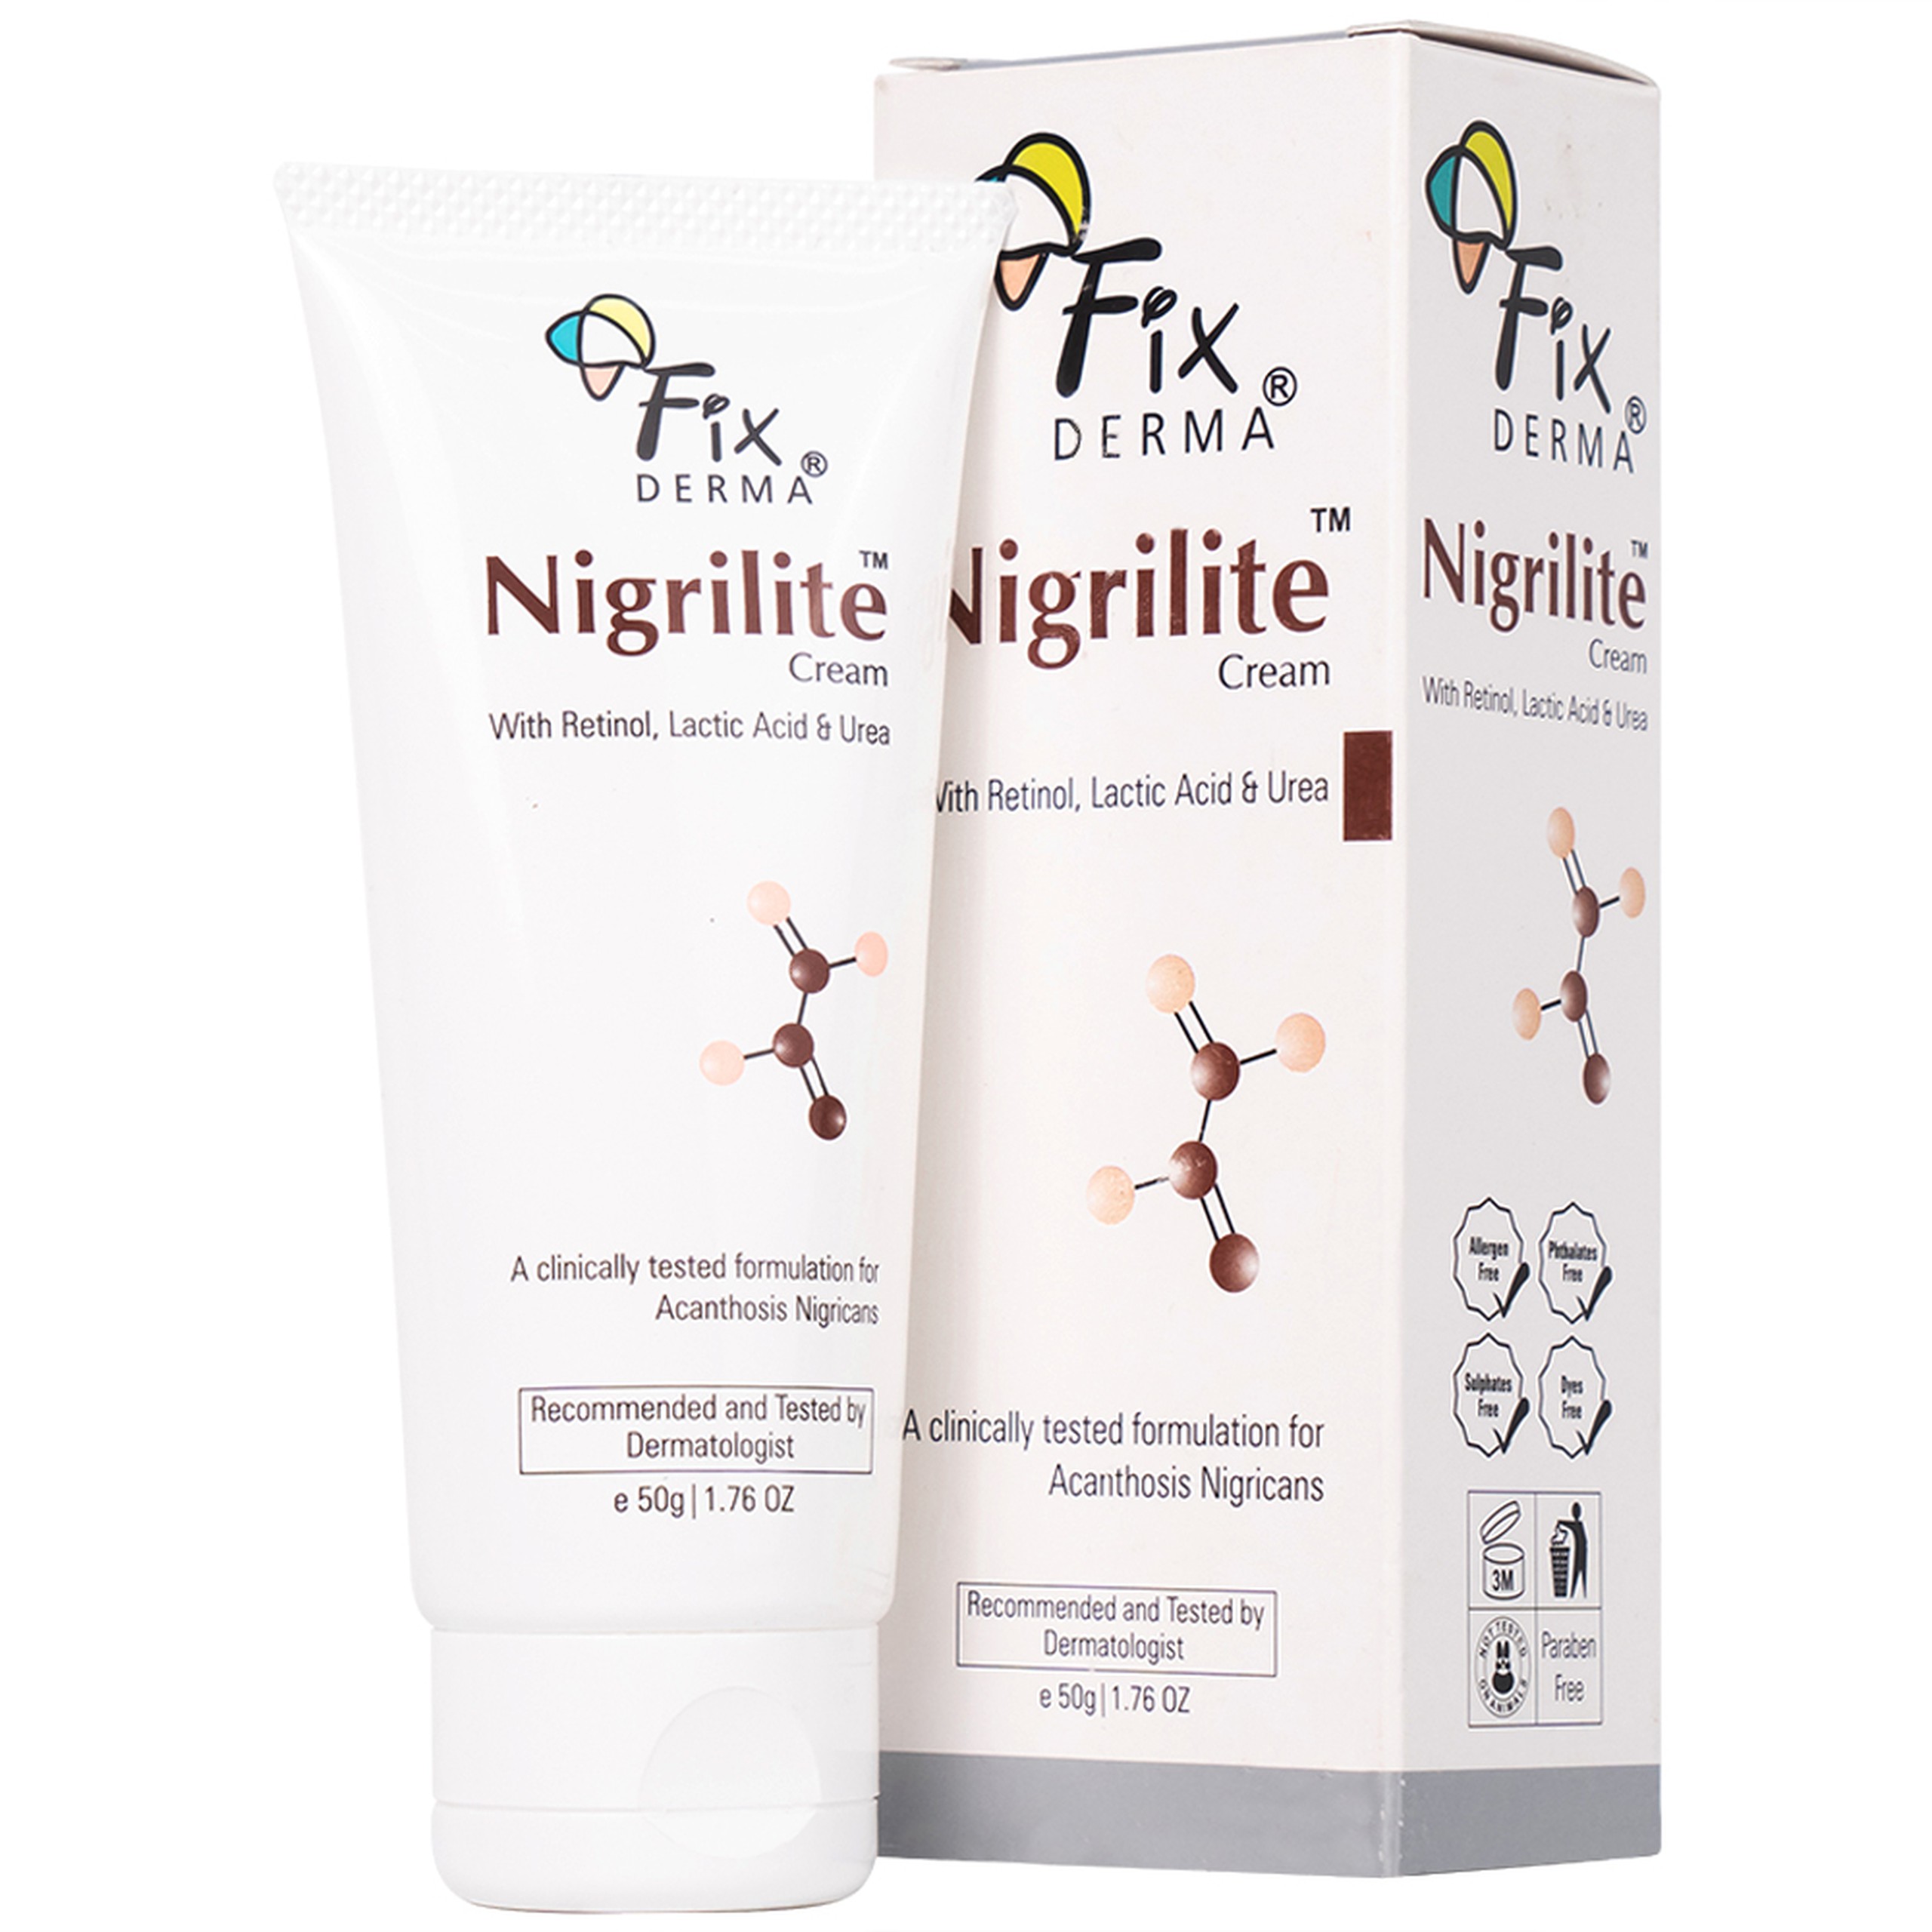 Kem dưỡng Fixderma Nigrilite Cream làm sạch tế bào da chết, mờ thâm, sáng da sẫm màu (50g)